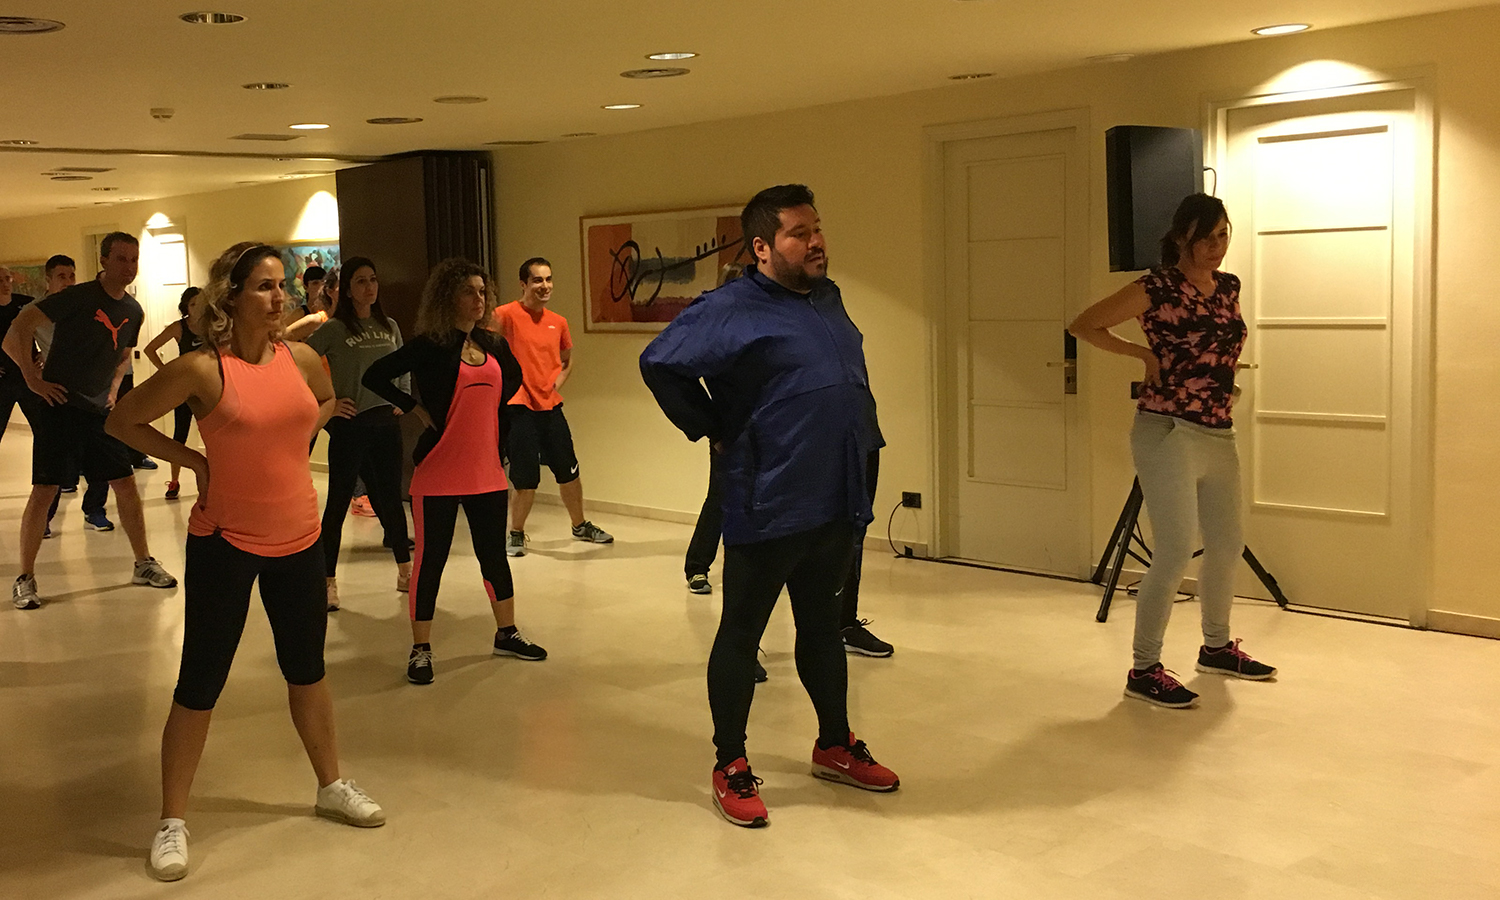 Algunos de los participantes a la sesión de Tai Chi Kung realizando un ejercicio durante la Convención 2018 de Conversia